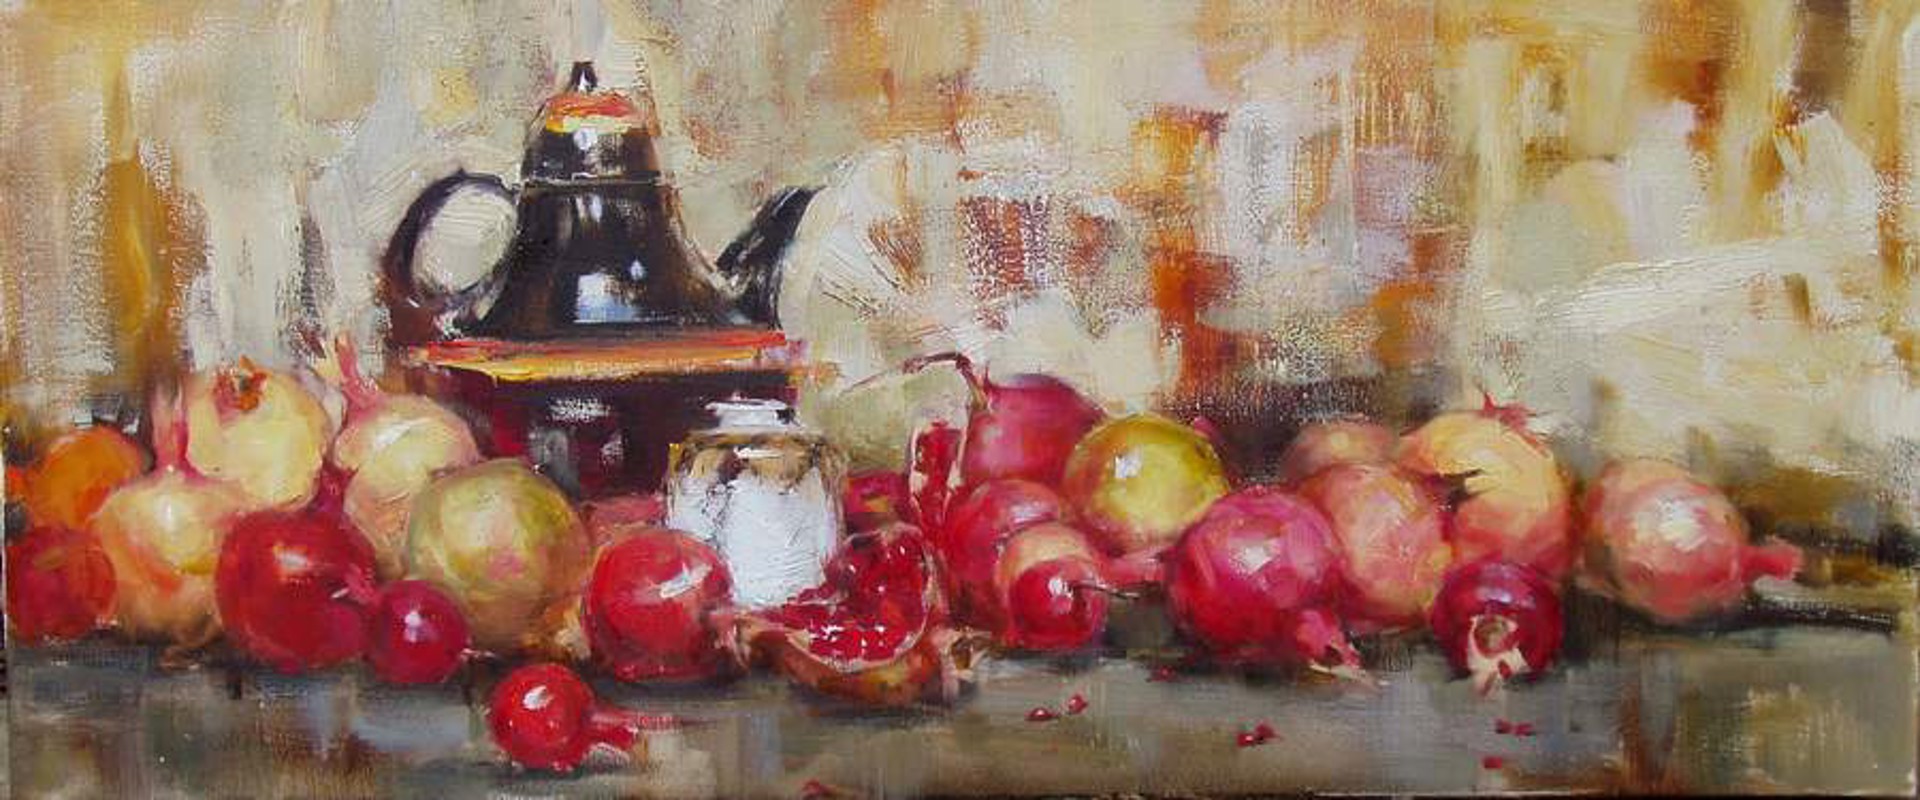 Still Life with Pomegranates by Yana Golubyatnikova